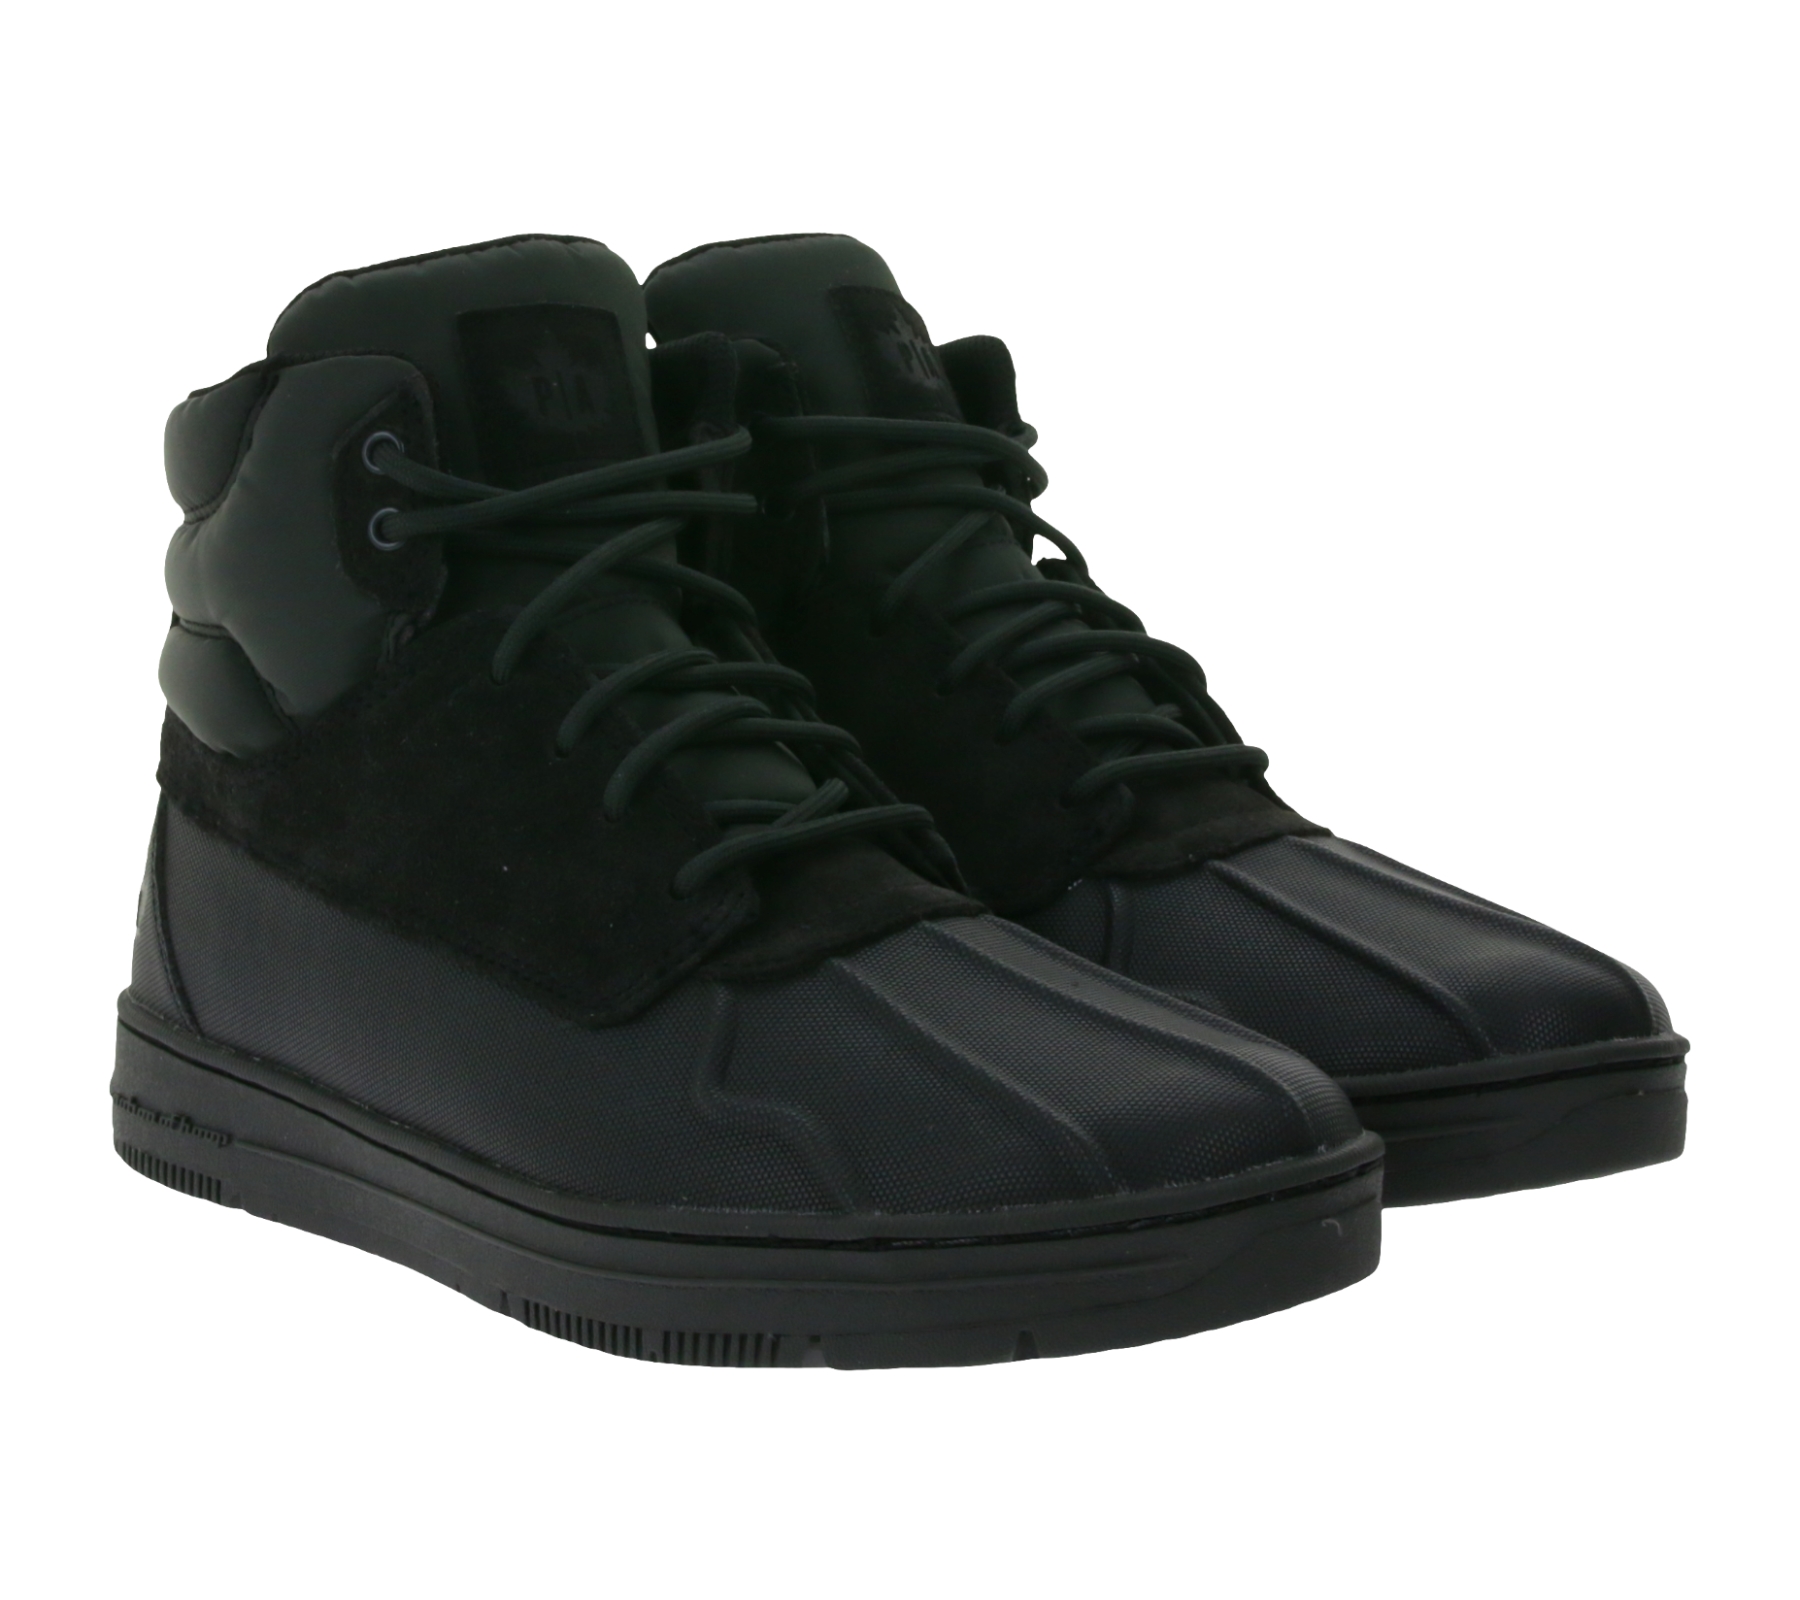 PARK AUTHORITY by K1X | Kickz Shellduck Herren High-Top Sneaker stylische Outdoor-Schuhe mit Lederanteil  6174-0203/0052 Schwarz von K1X | KICKZ